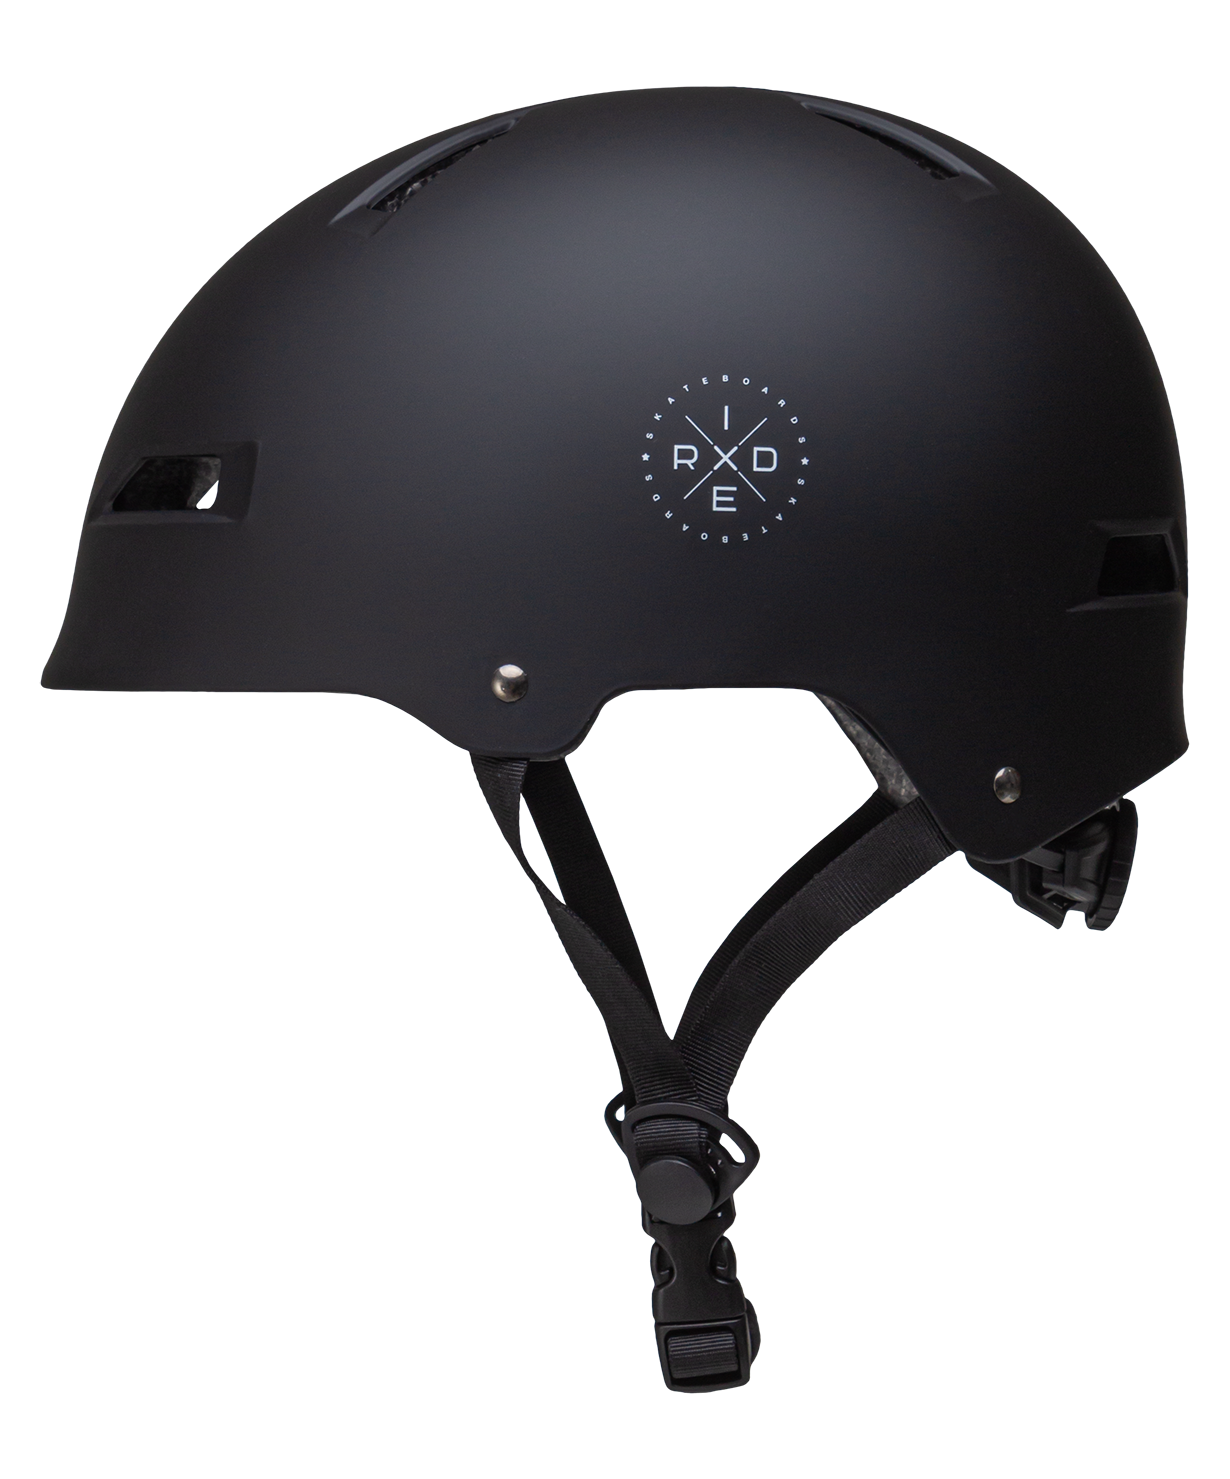 Шлем защитный Ridex Sb, с регулировкой, черный размер M